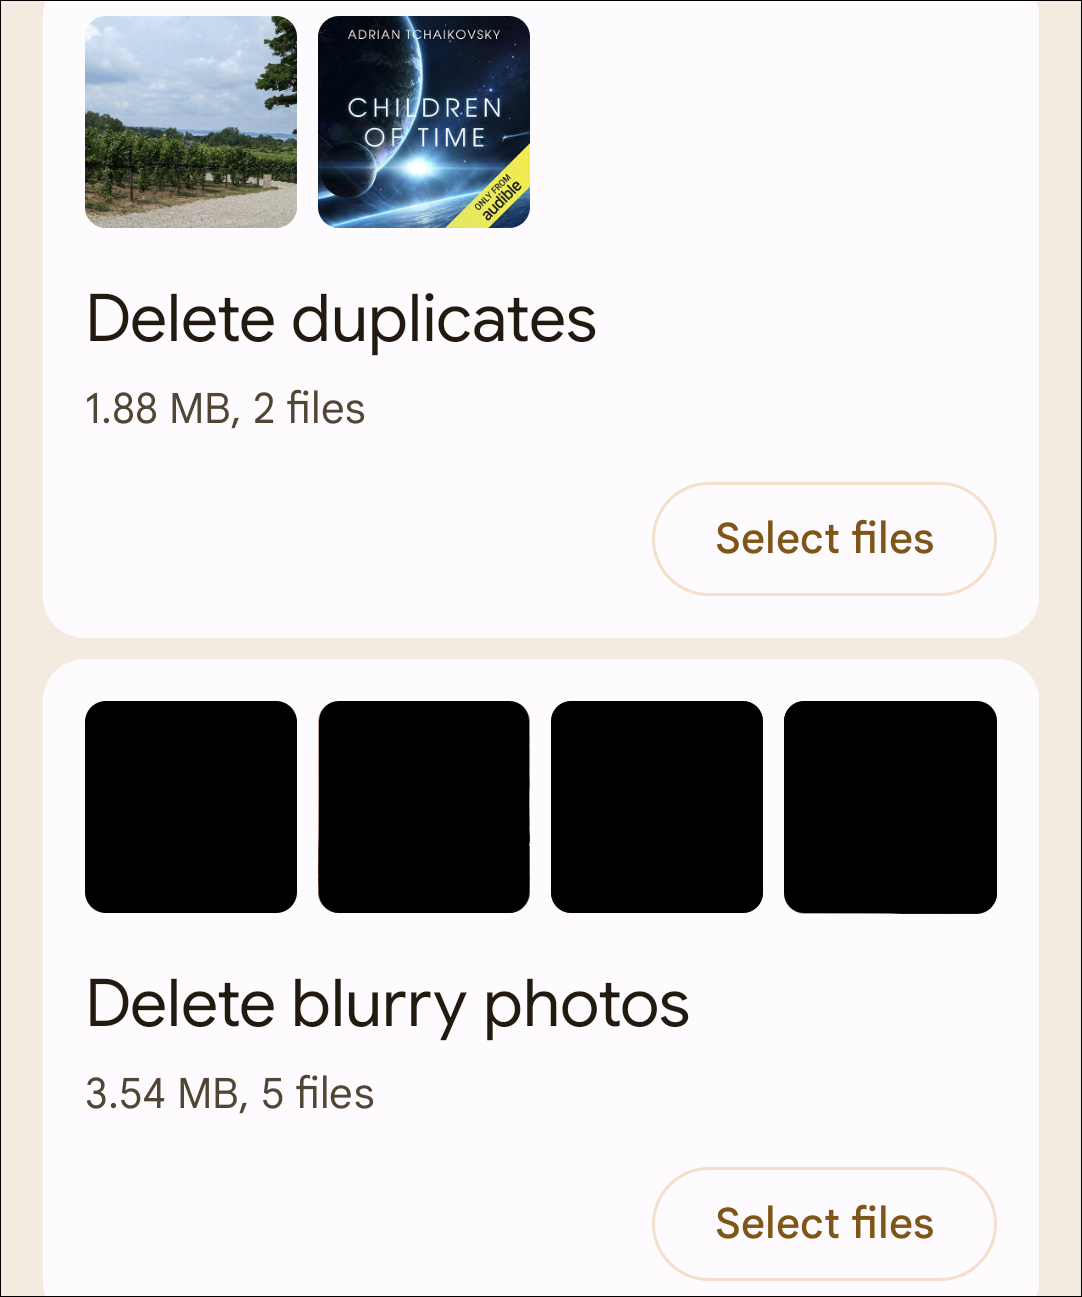 Types of files to delete.